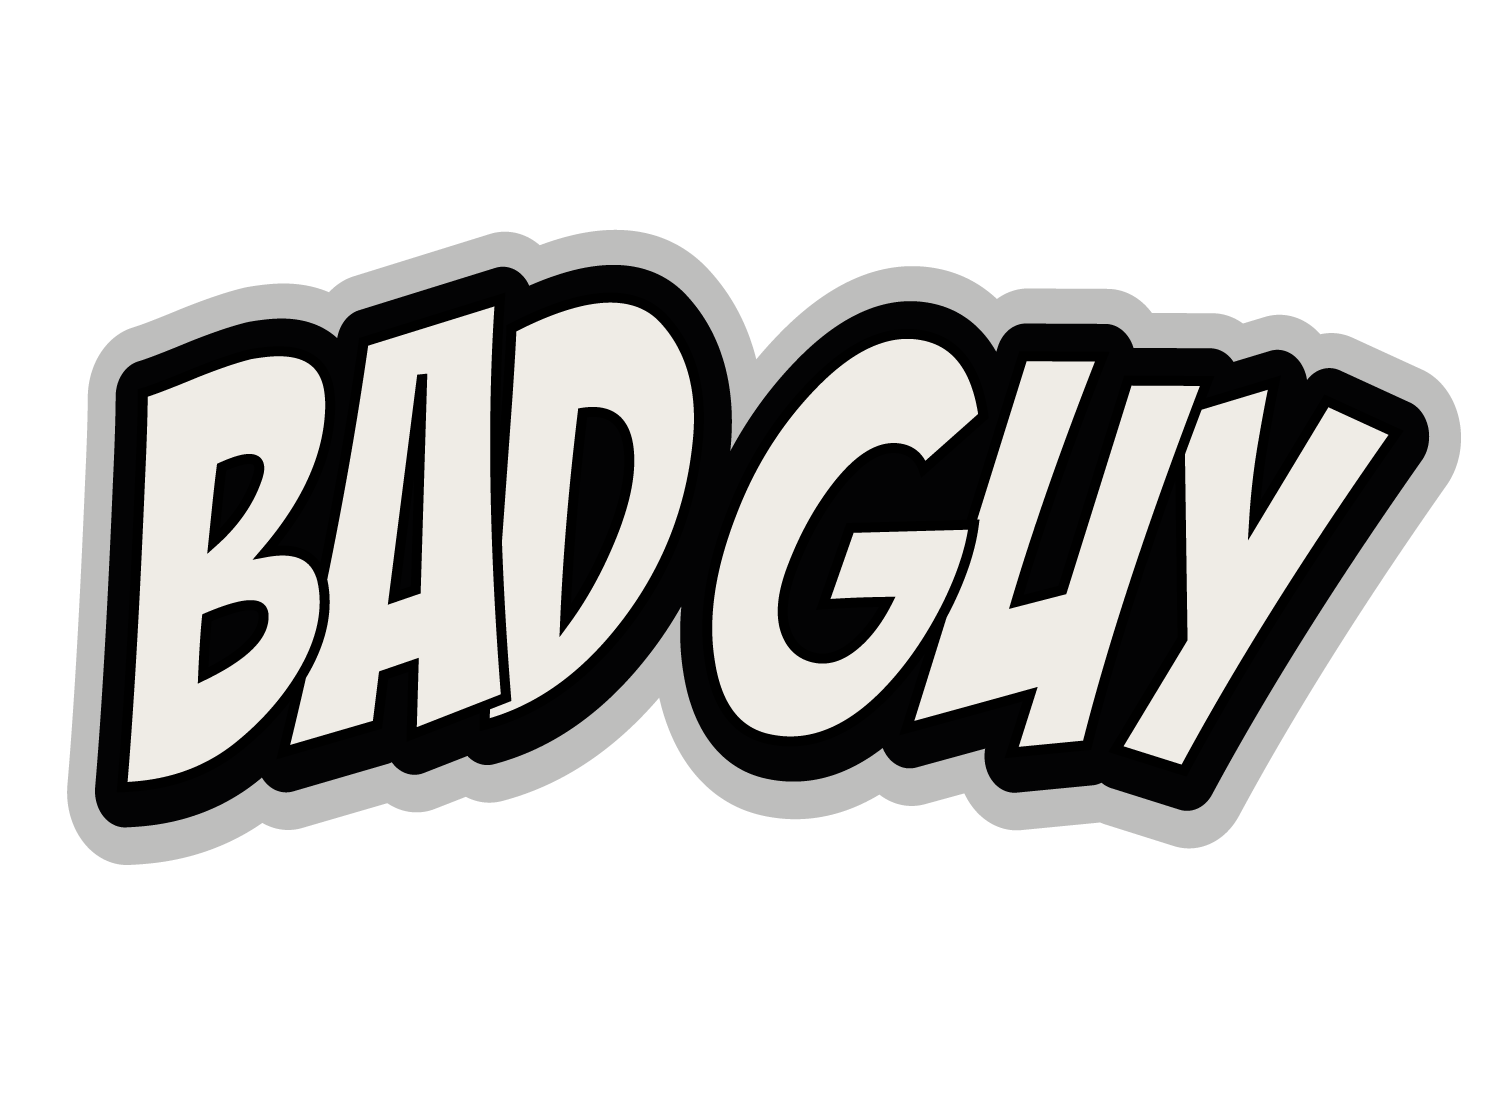 Billenlap "BAD GUY"